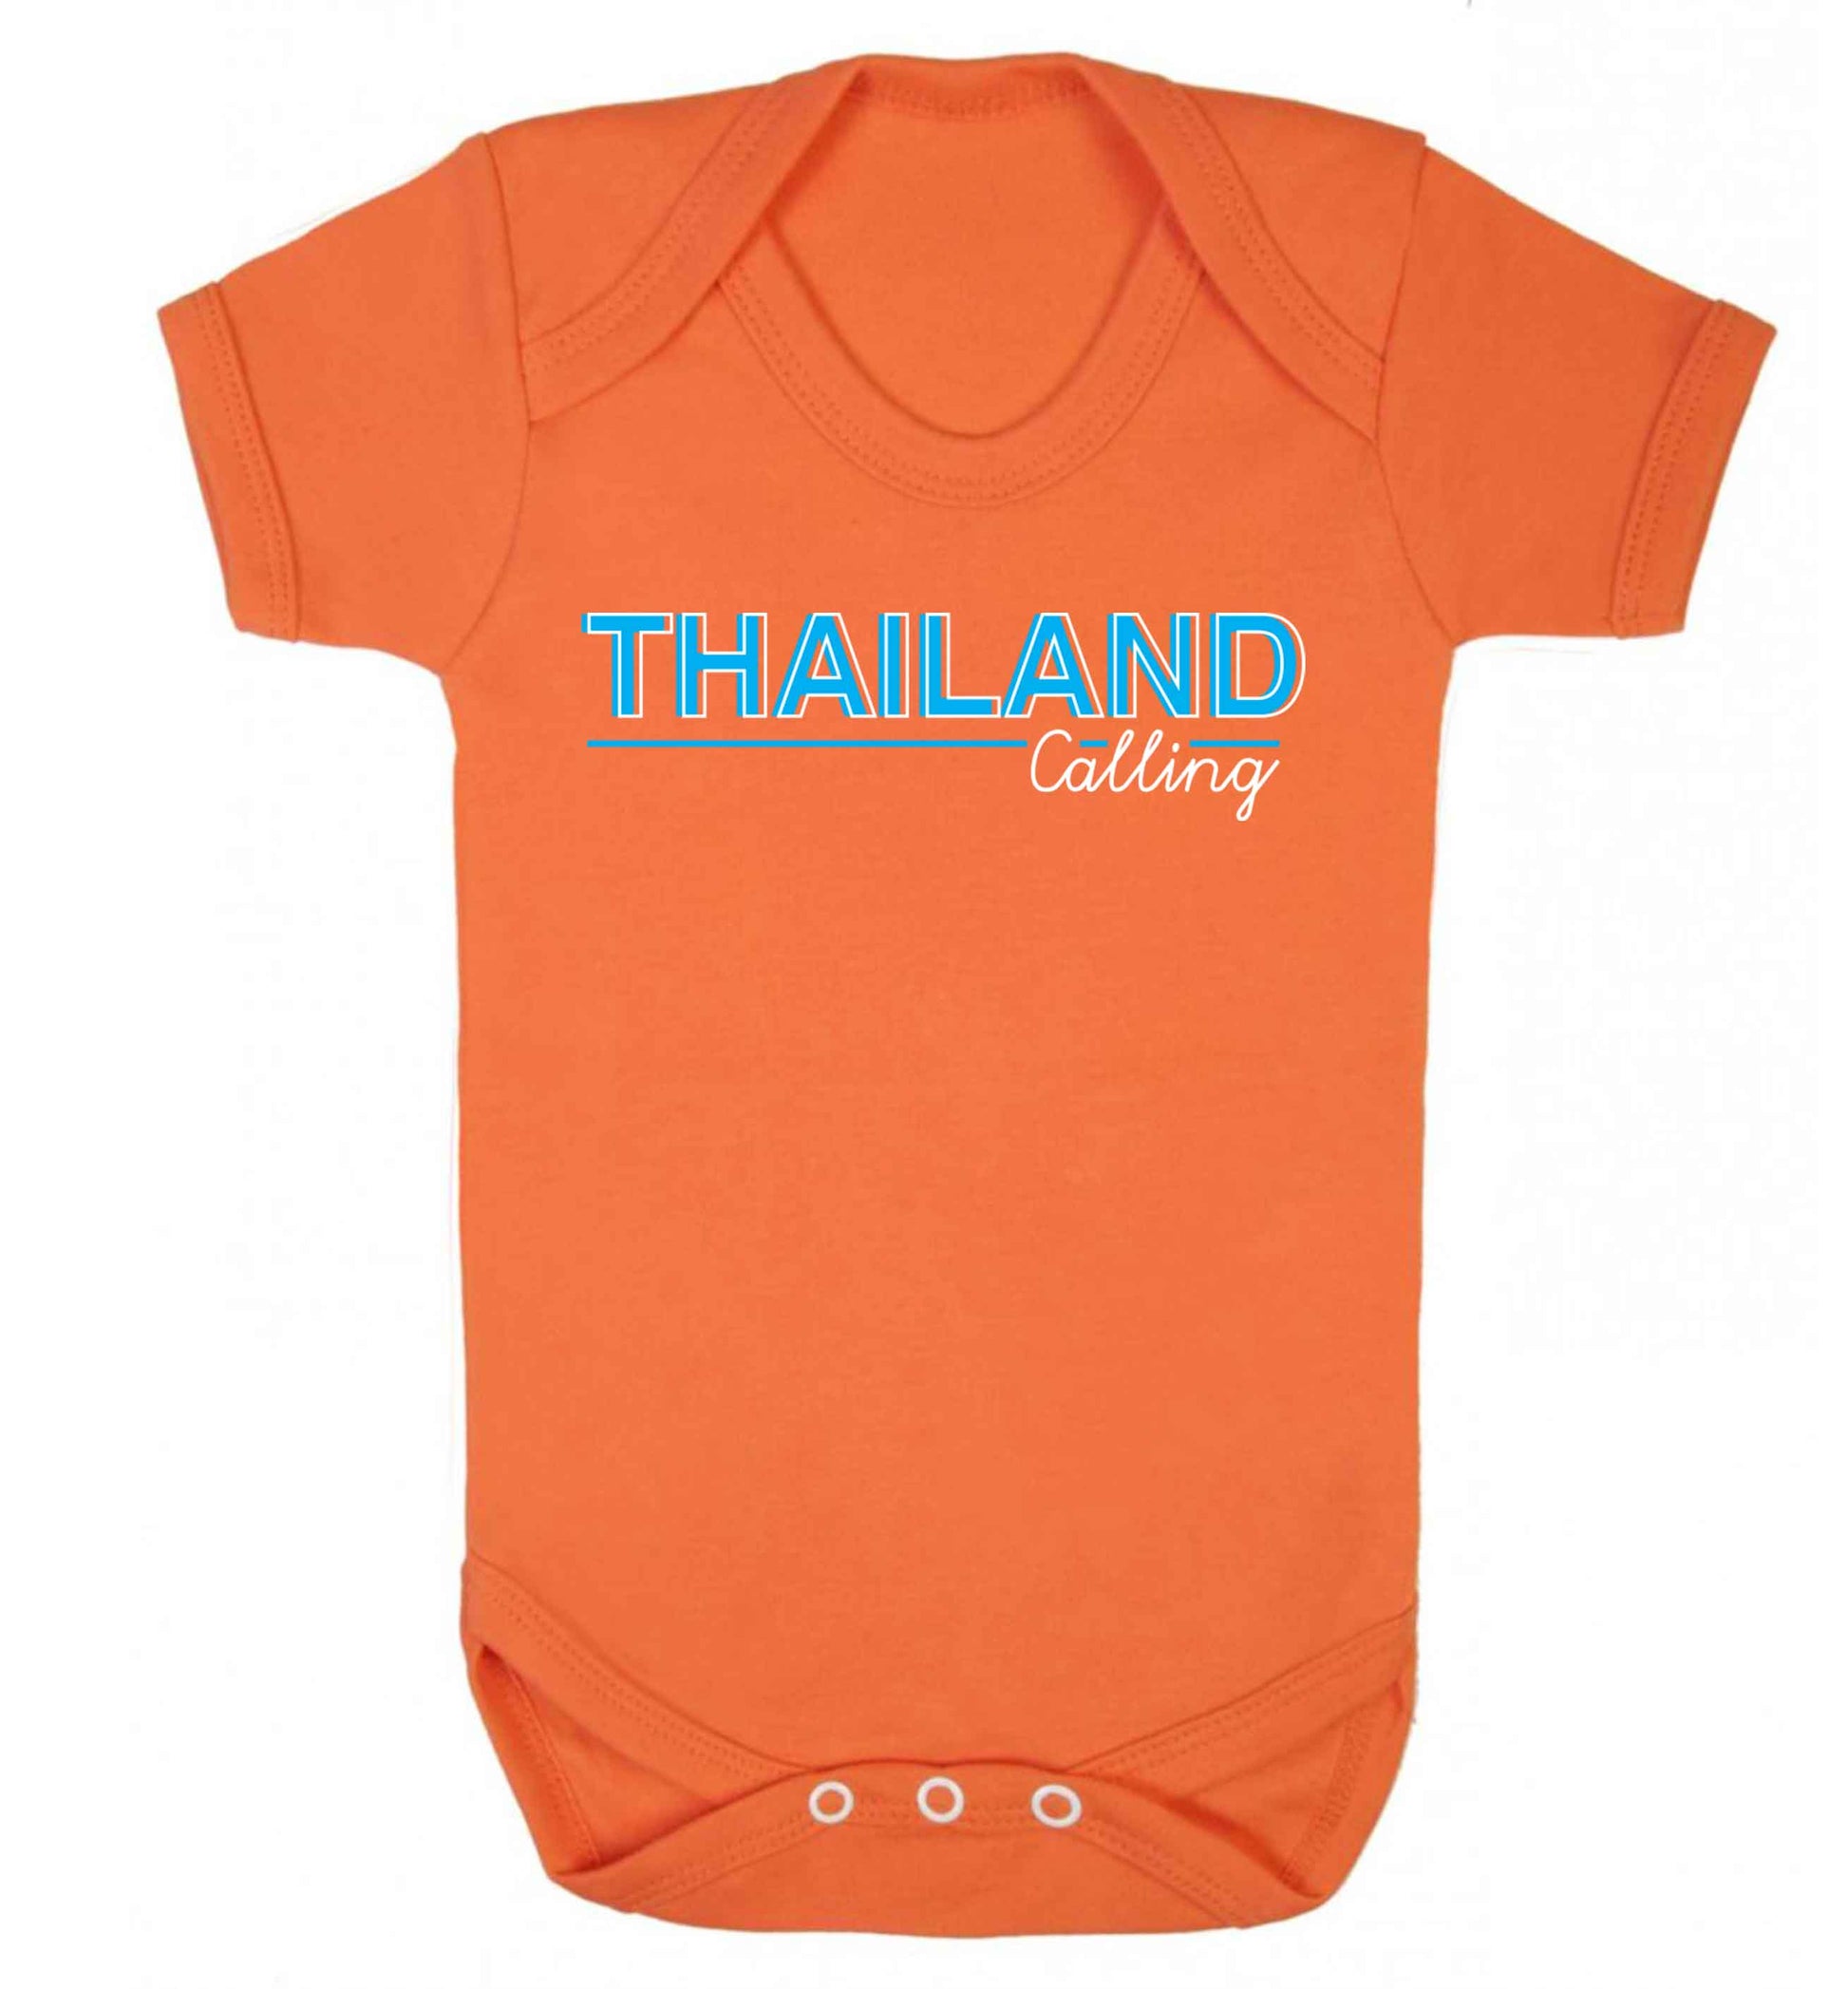 Thailand calling Baby Vest orange 18-24 months